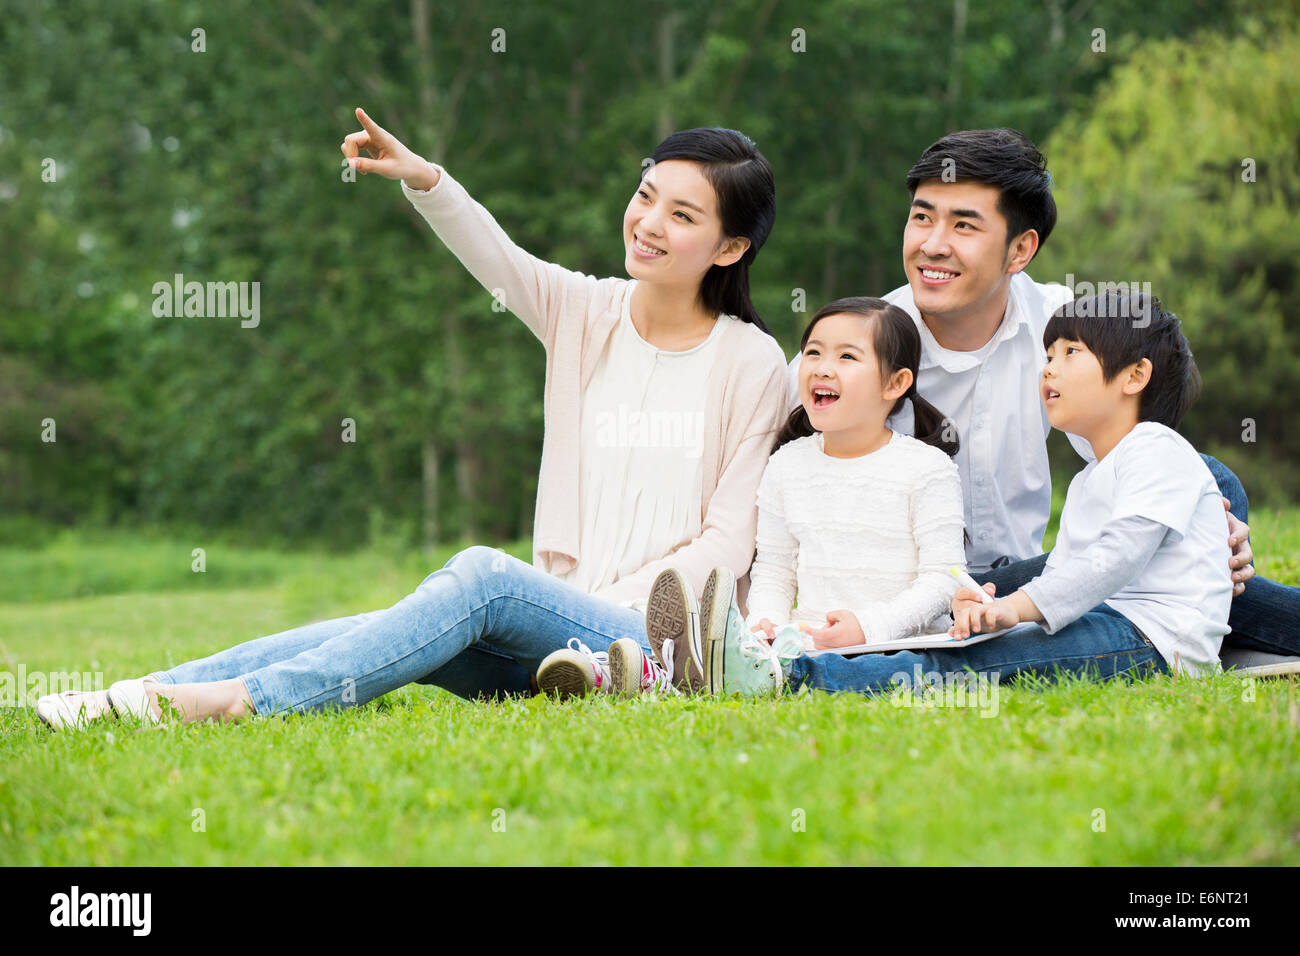 Portrait of happy family Stock Photo